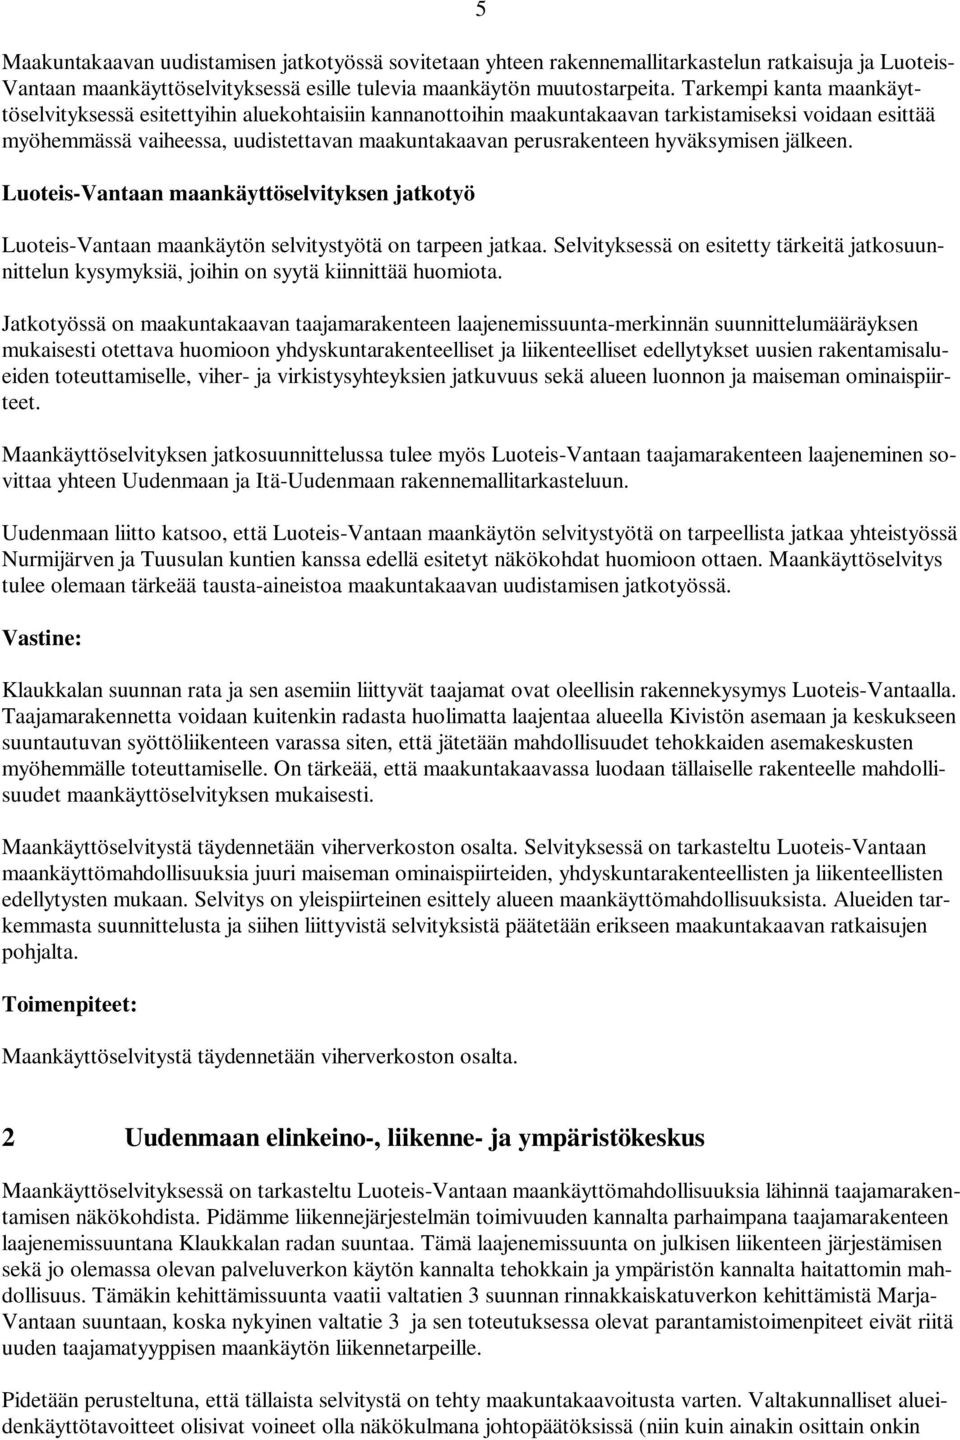 hyväksymisen jälkeen. Luoteis-Vantaan maankäyttöselvityksen jatkotyö Luoteis-Vantaan maankäytön selvitystyötä on tarpeen jatkaa.